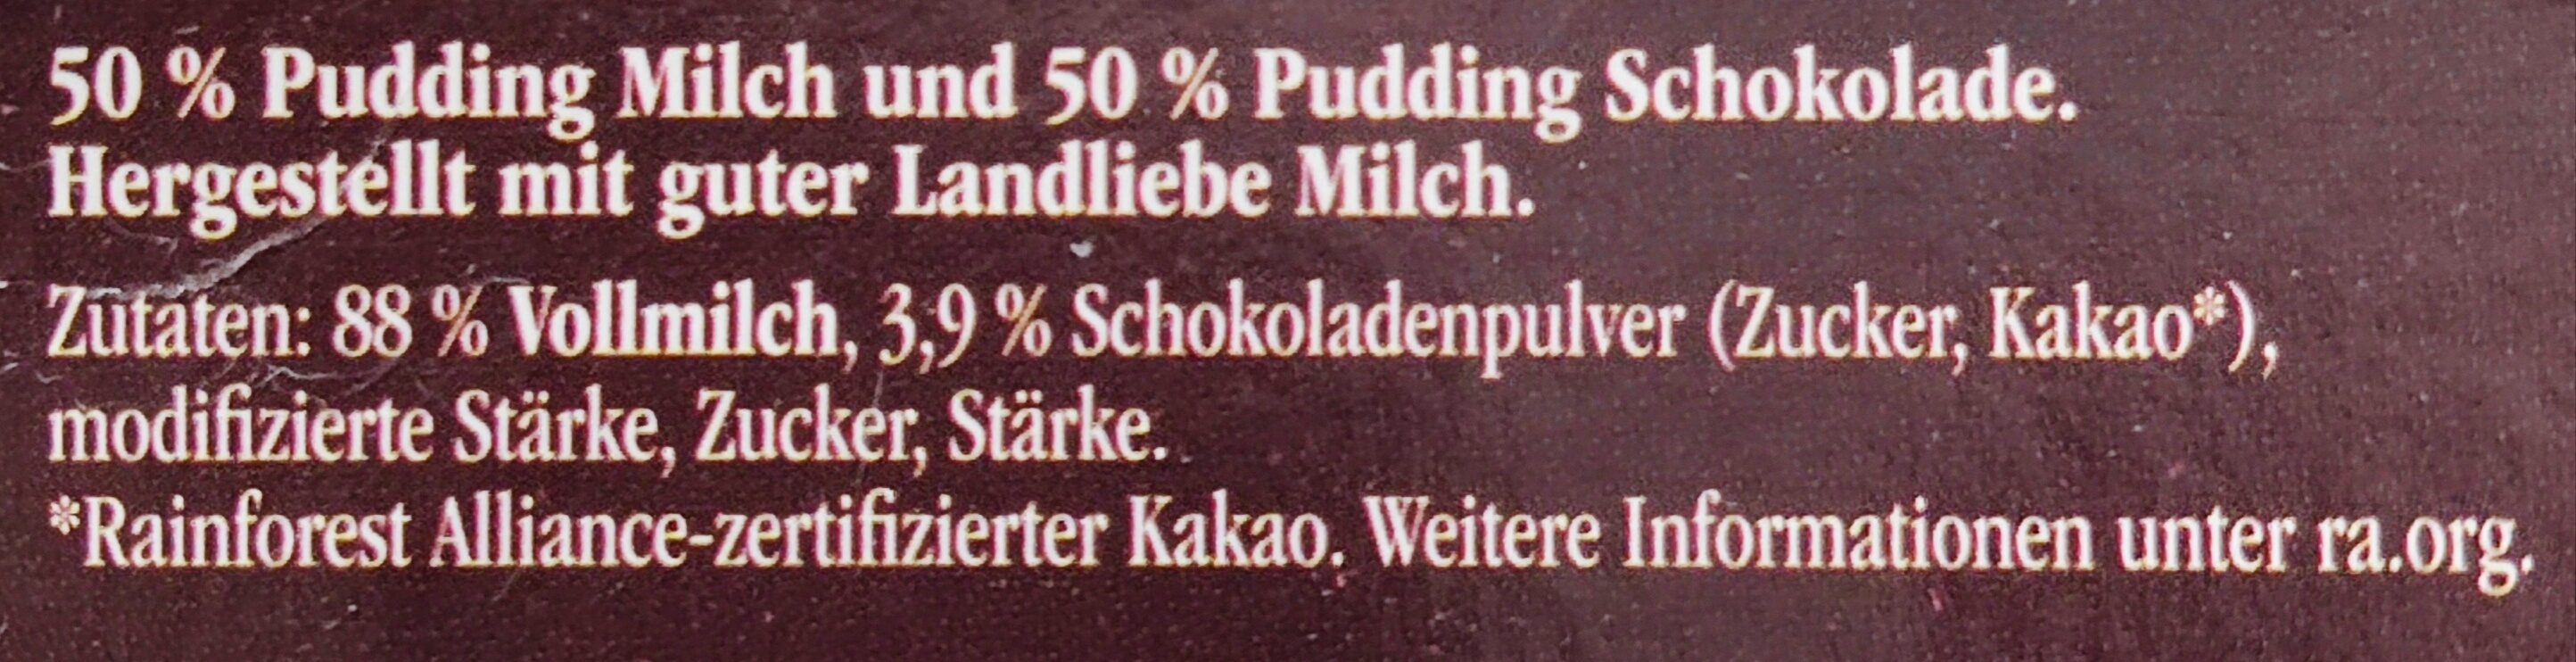 Lecker-Schmecker-Pudding - Schoko & Milch - Zutaten